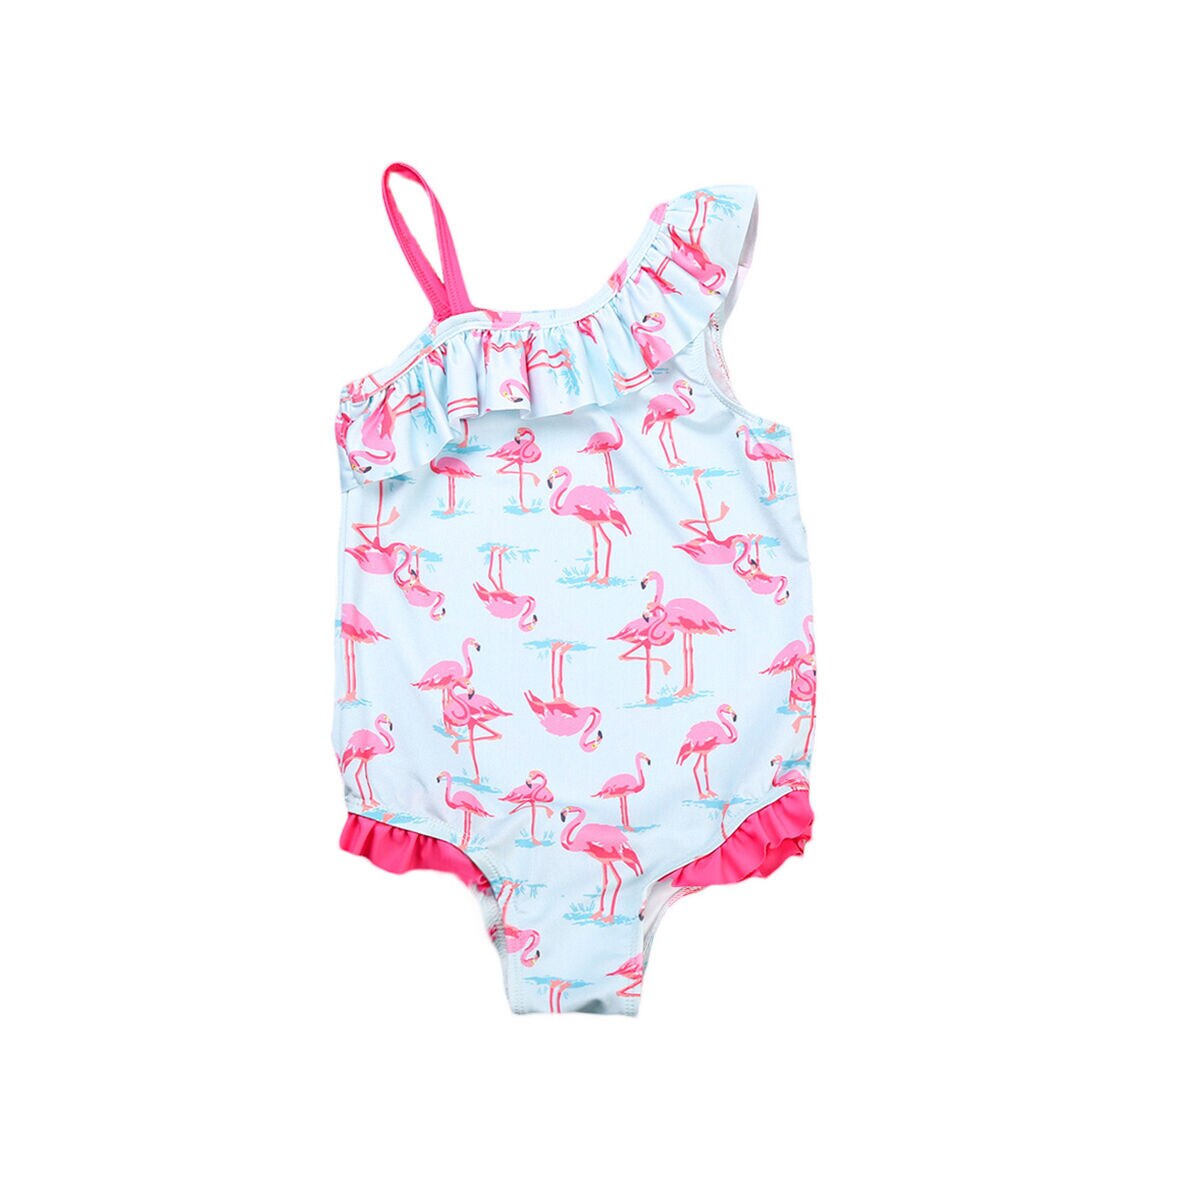 Flamingo toddler børn piger en skulderrem flæser ét stykke badetøj badedragt badedragt til 2-7y